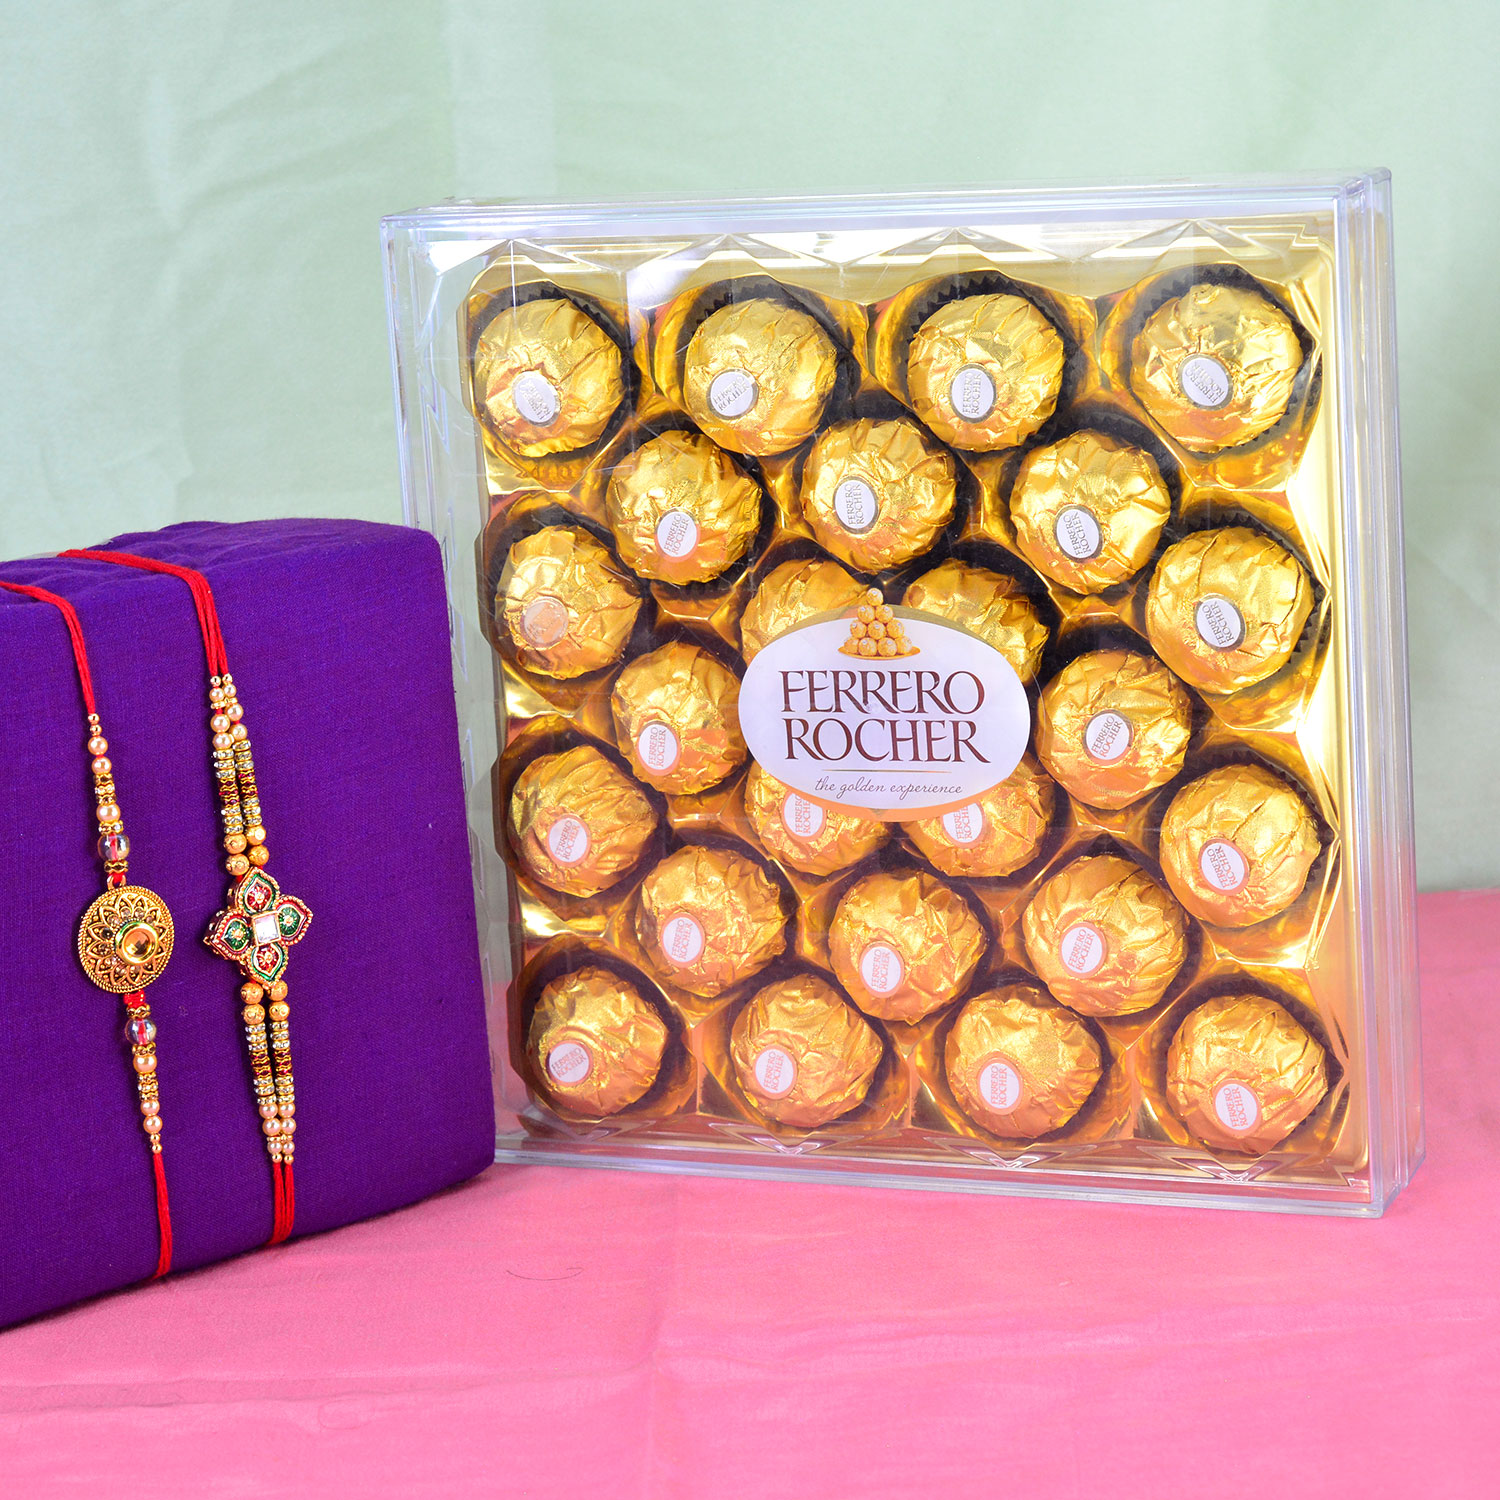 Kundan Meen Work Golden 2 Brother Rakhi with Ferrero Rocher Chocolate